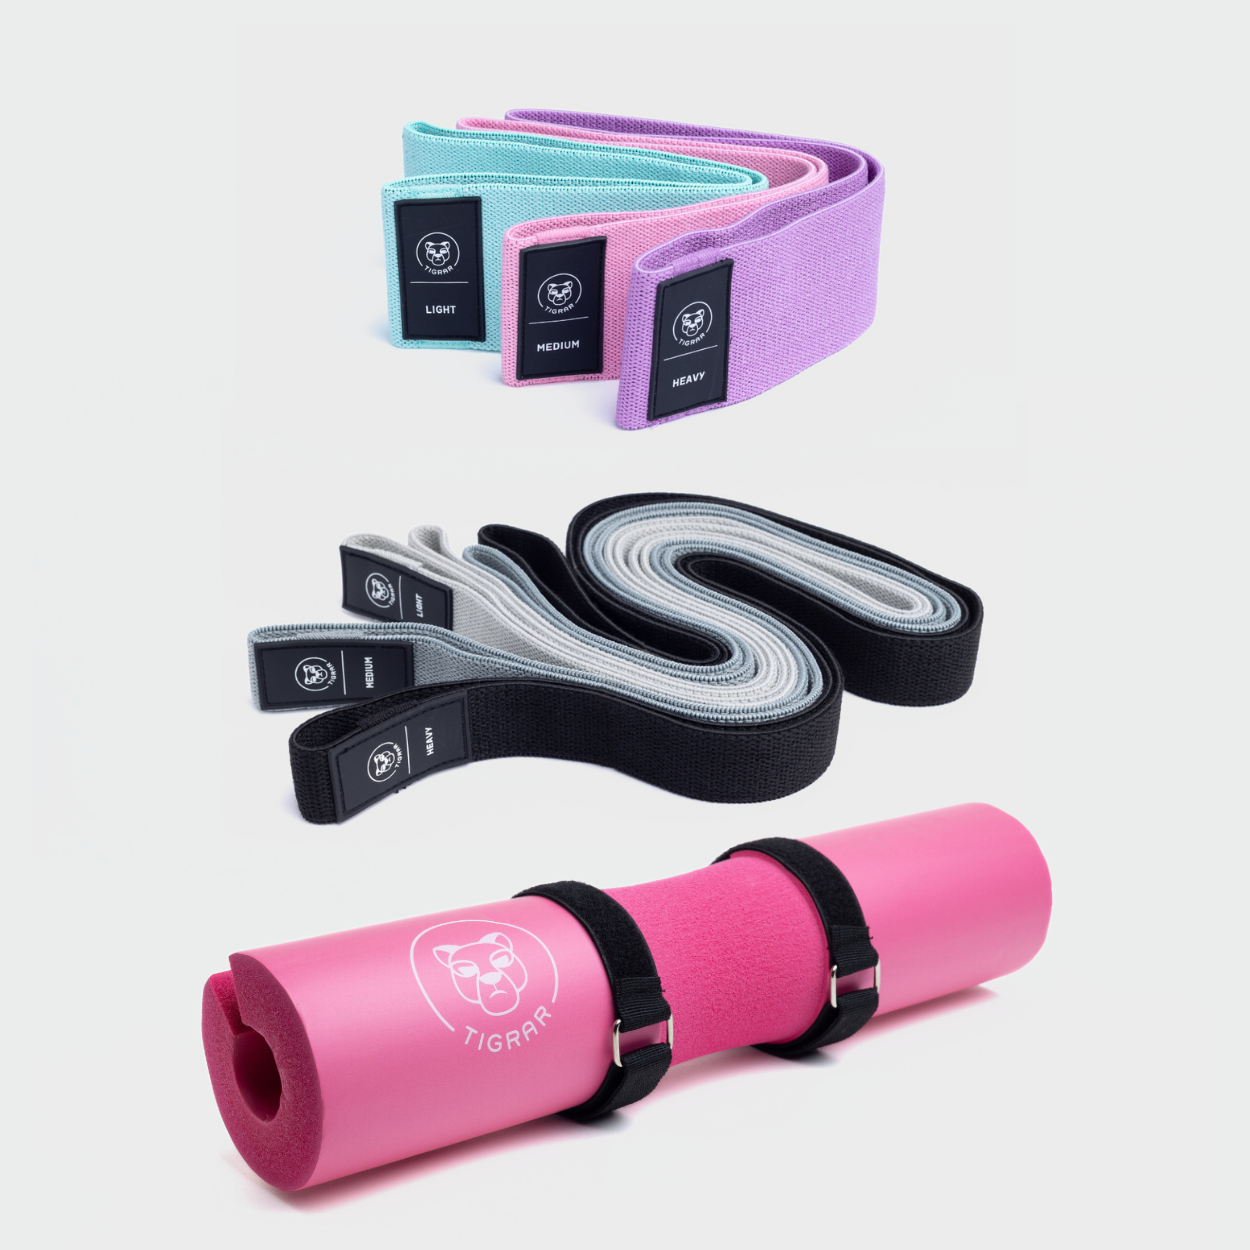 Bundel met roze Tigrar barbell pad en 6 fitness elastieken in diverse kleuren